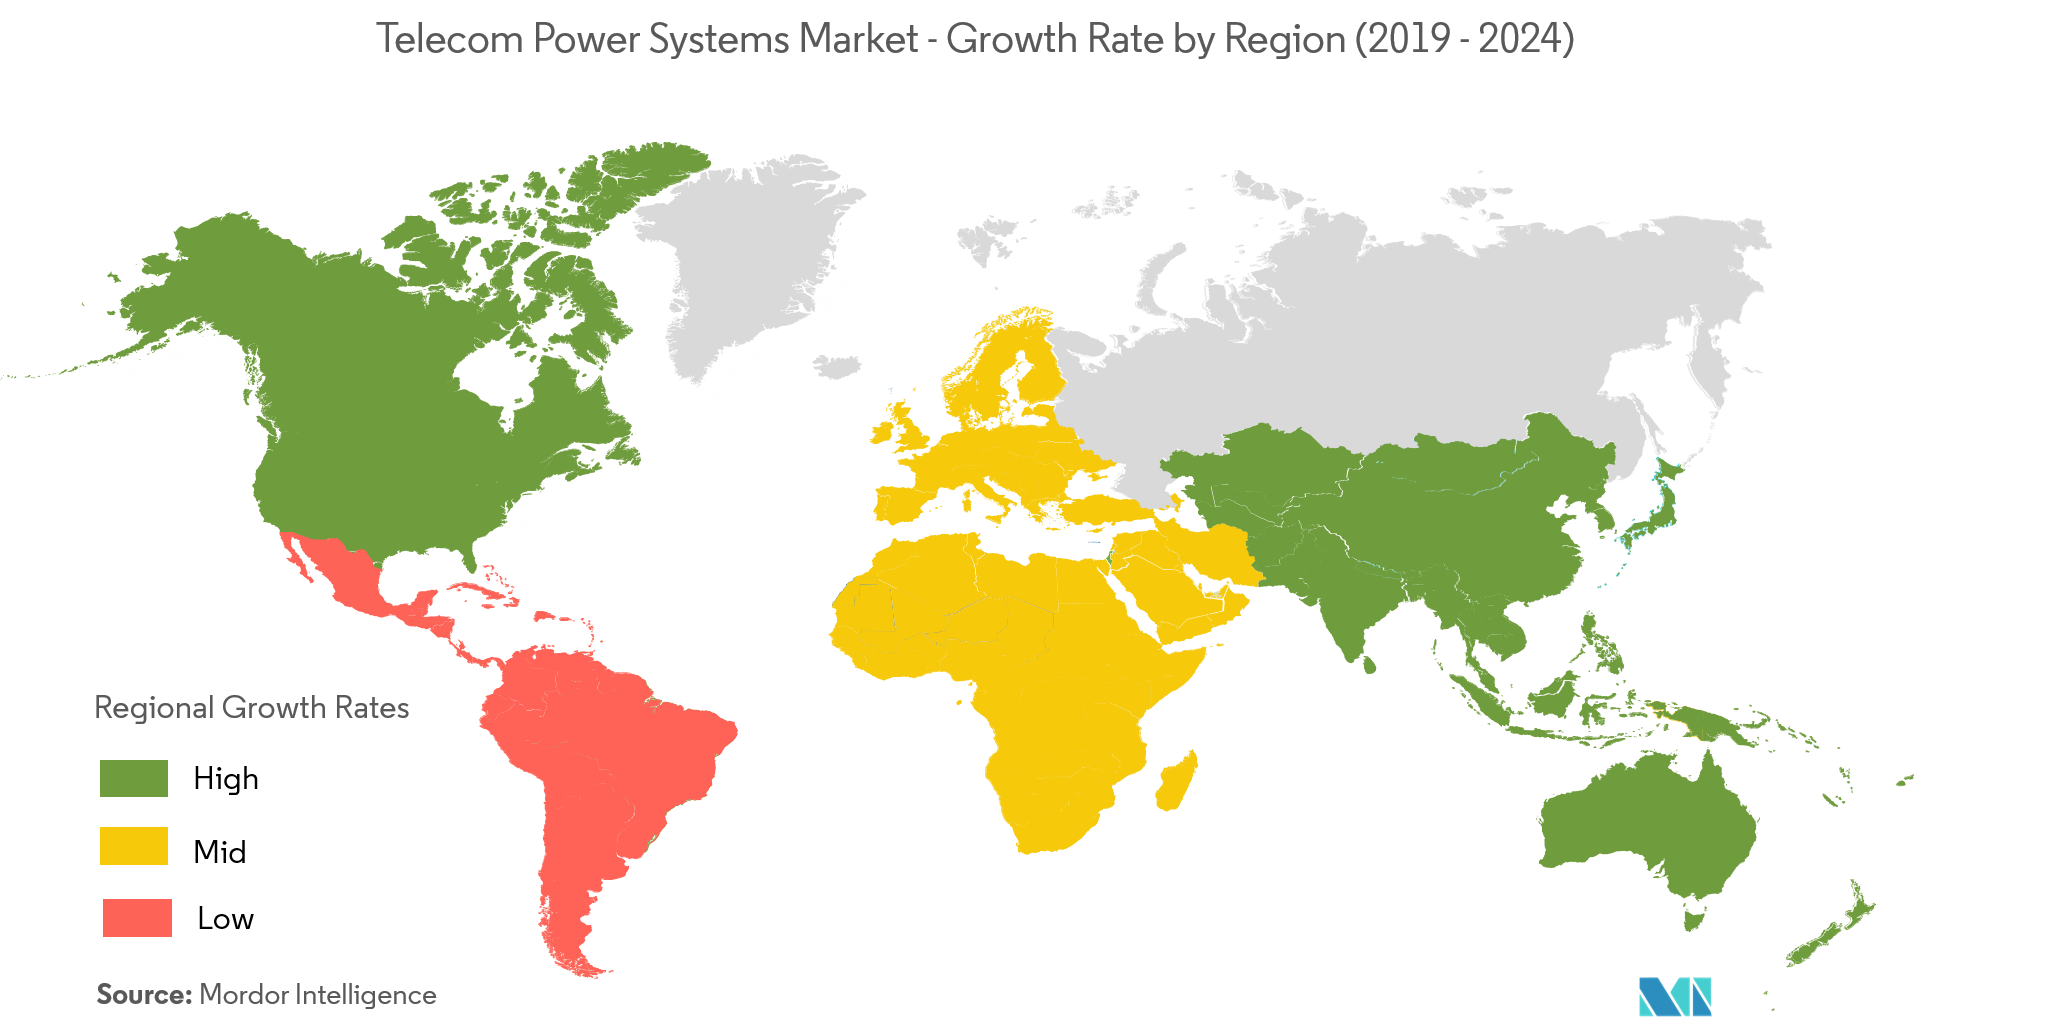 Telecom Power Systems Market Forecast